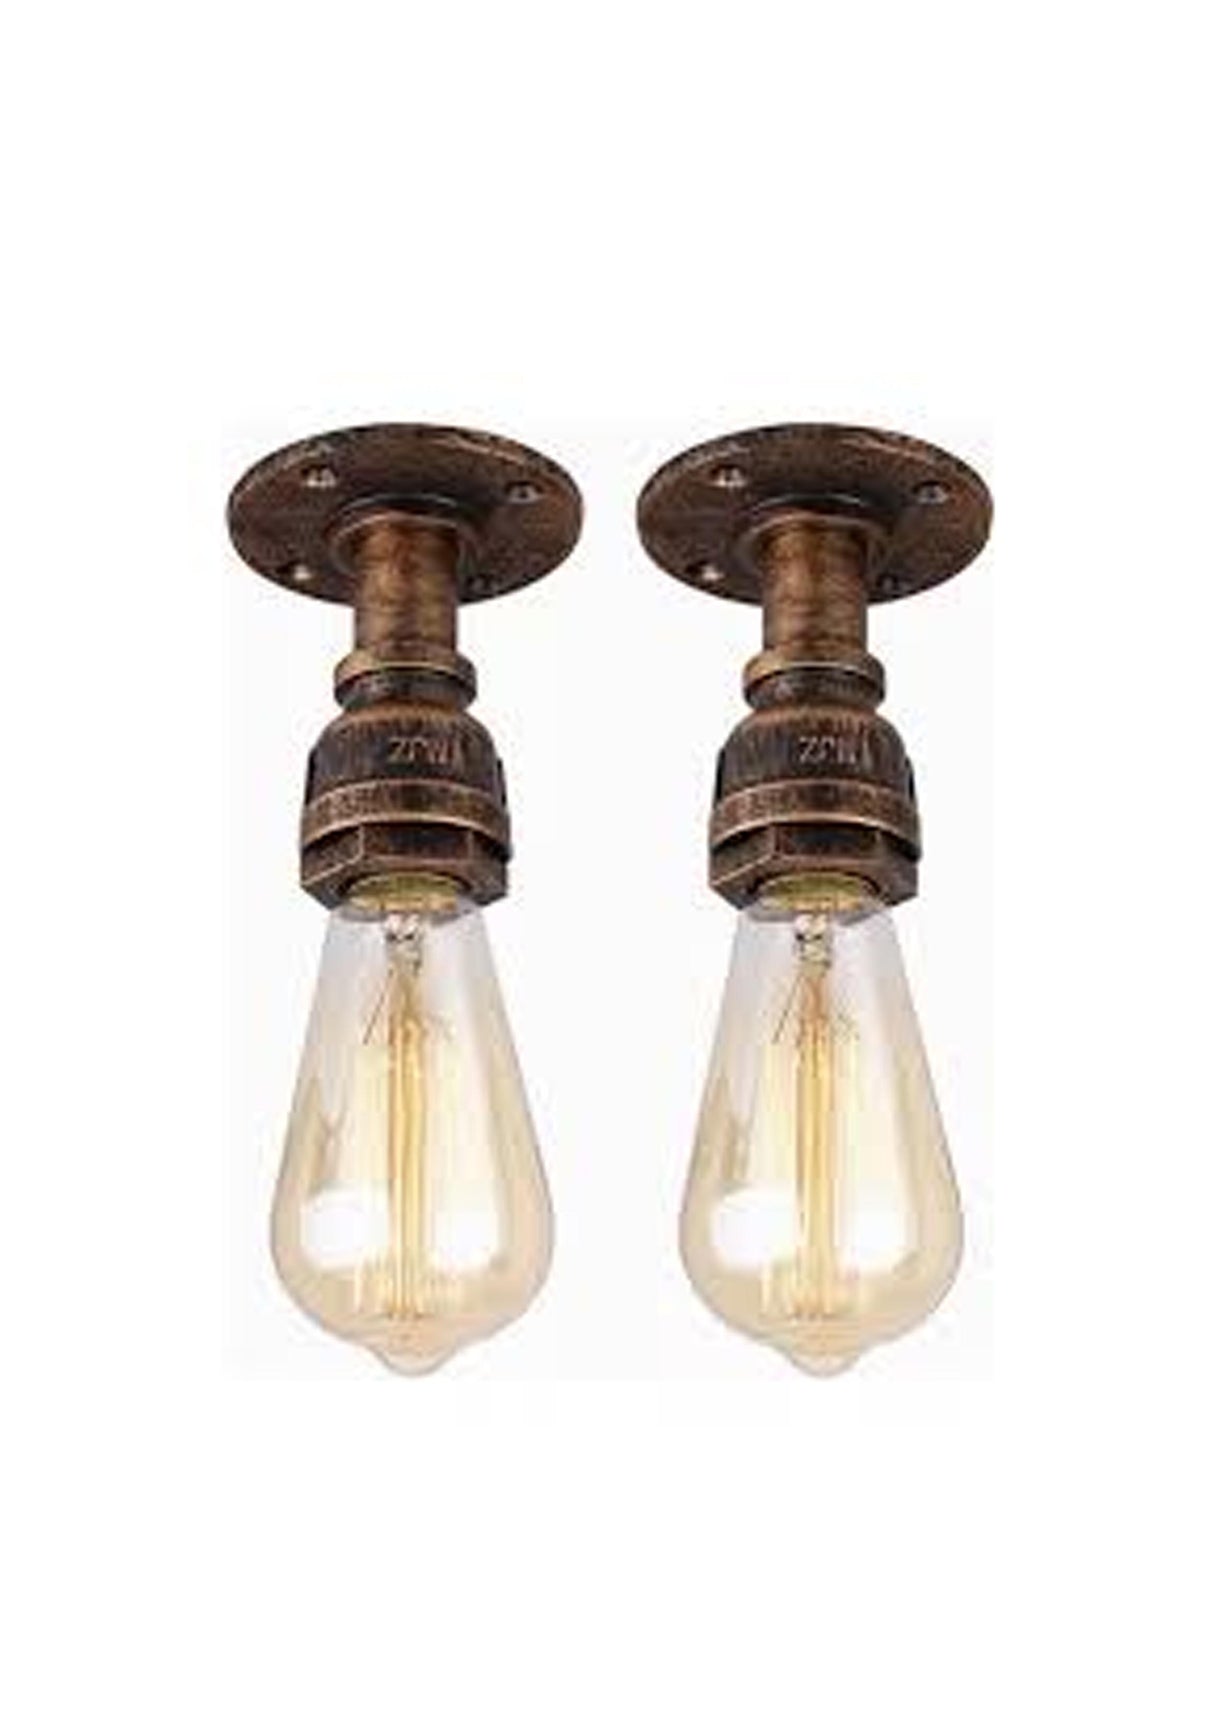 2 piezas lampara de techo vintage luz industrial e27